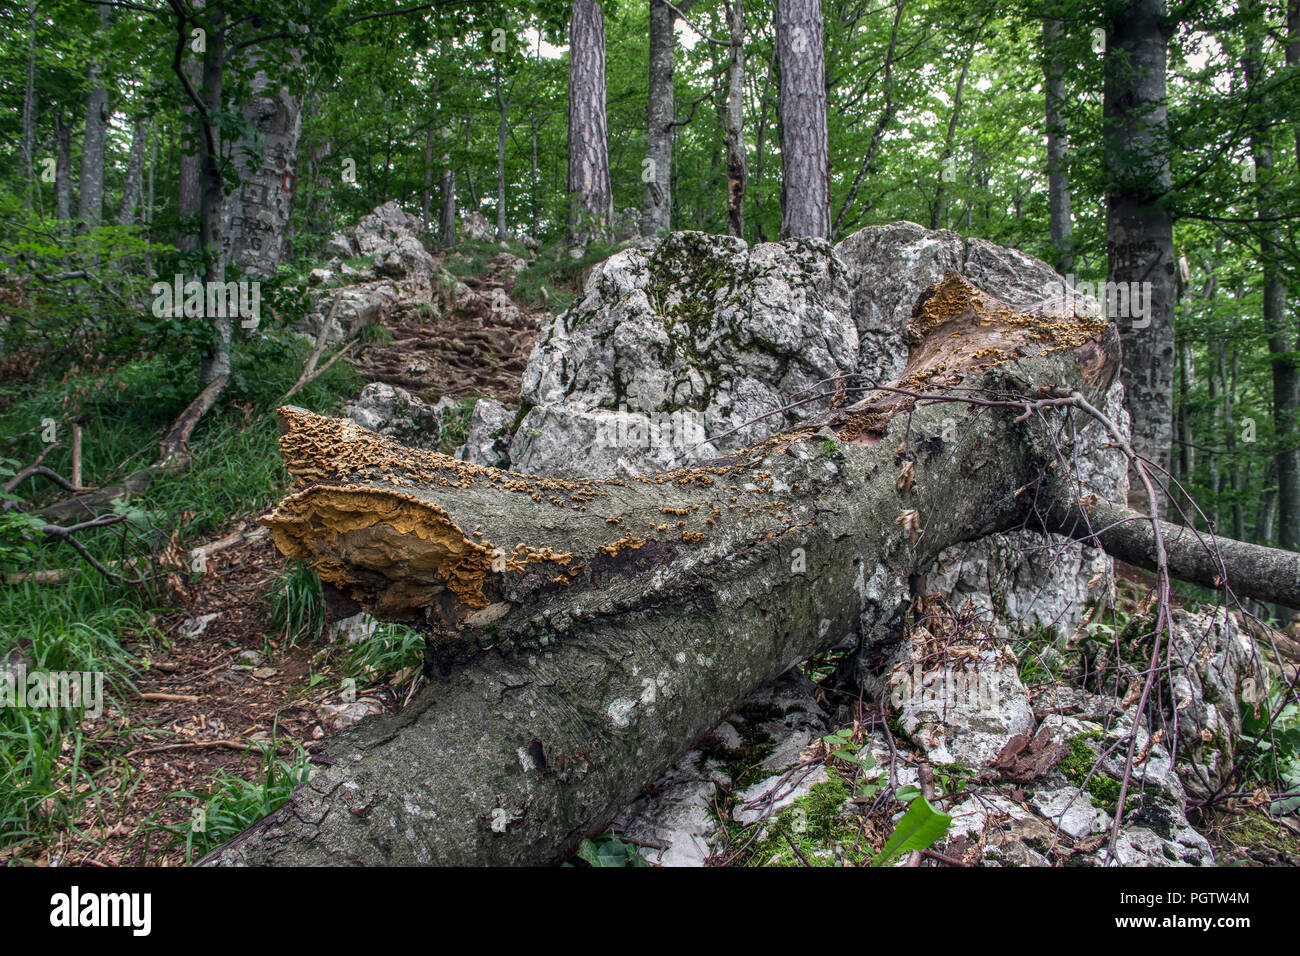 Le Parc National de TARA, l'ouest de la Serbie - Plateau de soufre : champignons (sulphureus) poussant sur un tronc pourri mort Banque D'Images